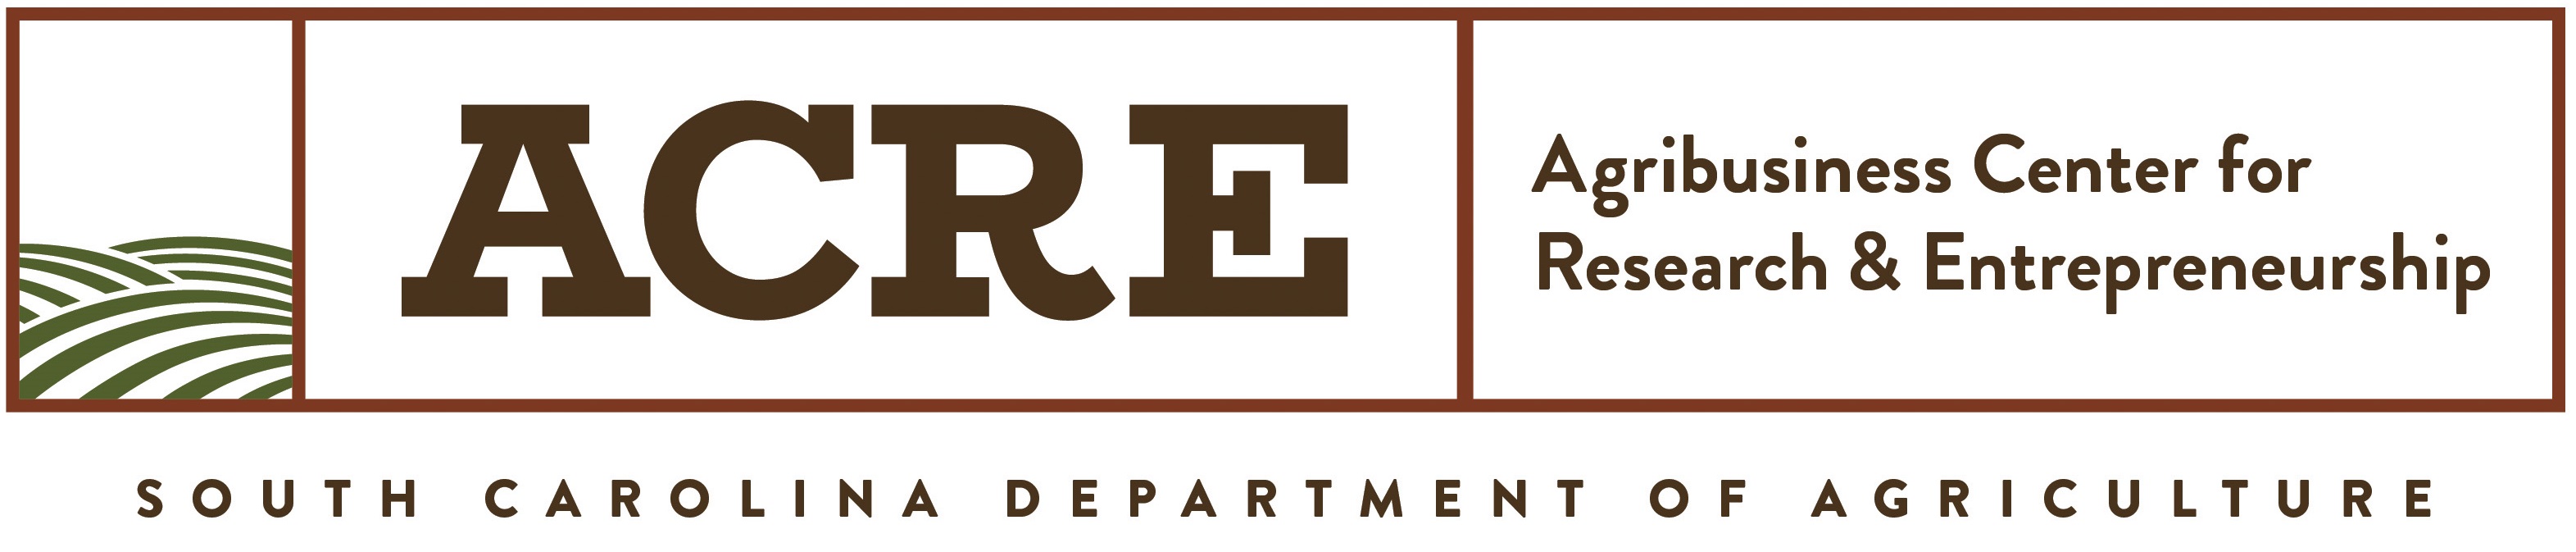 Agribusiness Center for Research & Entrepreneurship logo